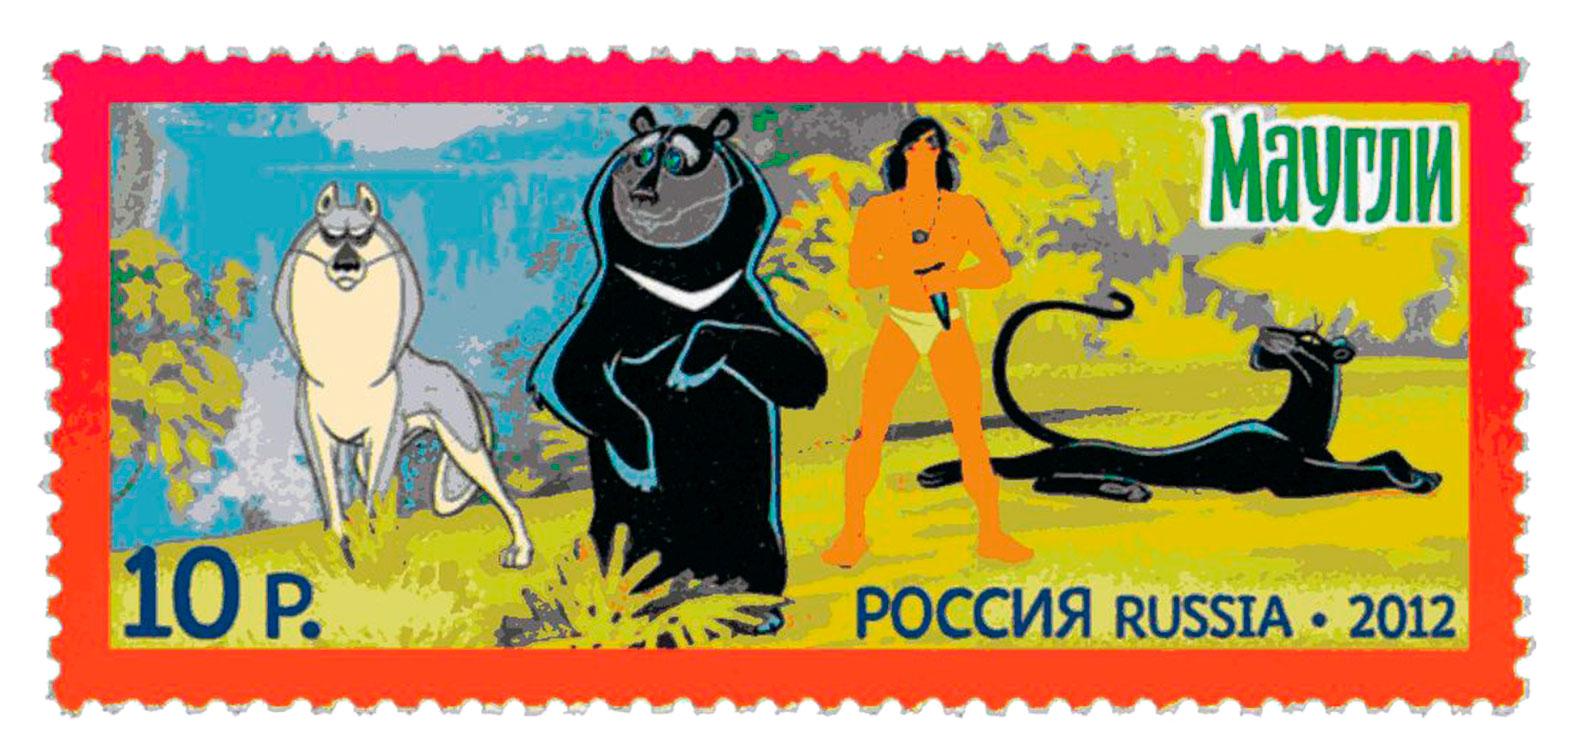 Akela, Baloo, Mowgli och Bagheera från filmen ”Maugli” (1973) som ryskt frimärke 2012.